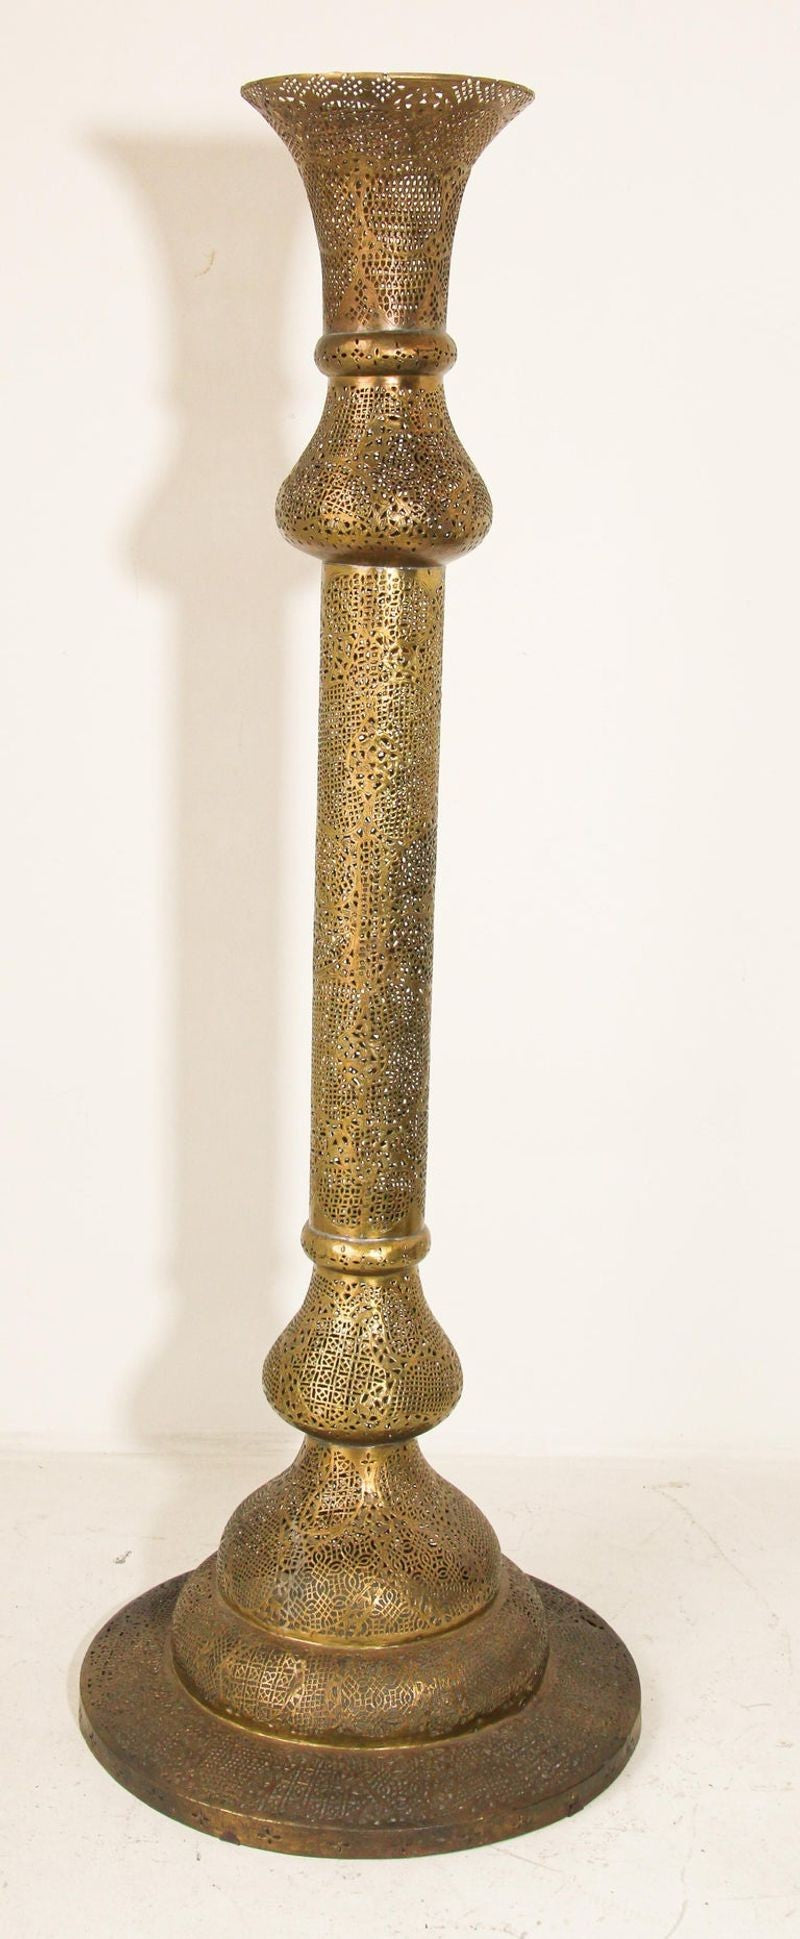 Antique Egyptian Middle Eastern Brass Candleholder Floor Lamp - E-mosaik